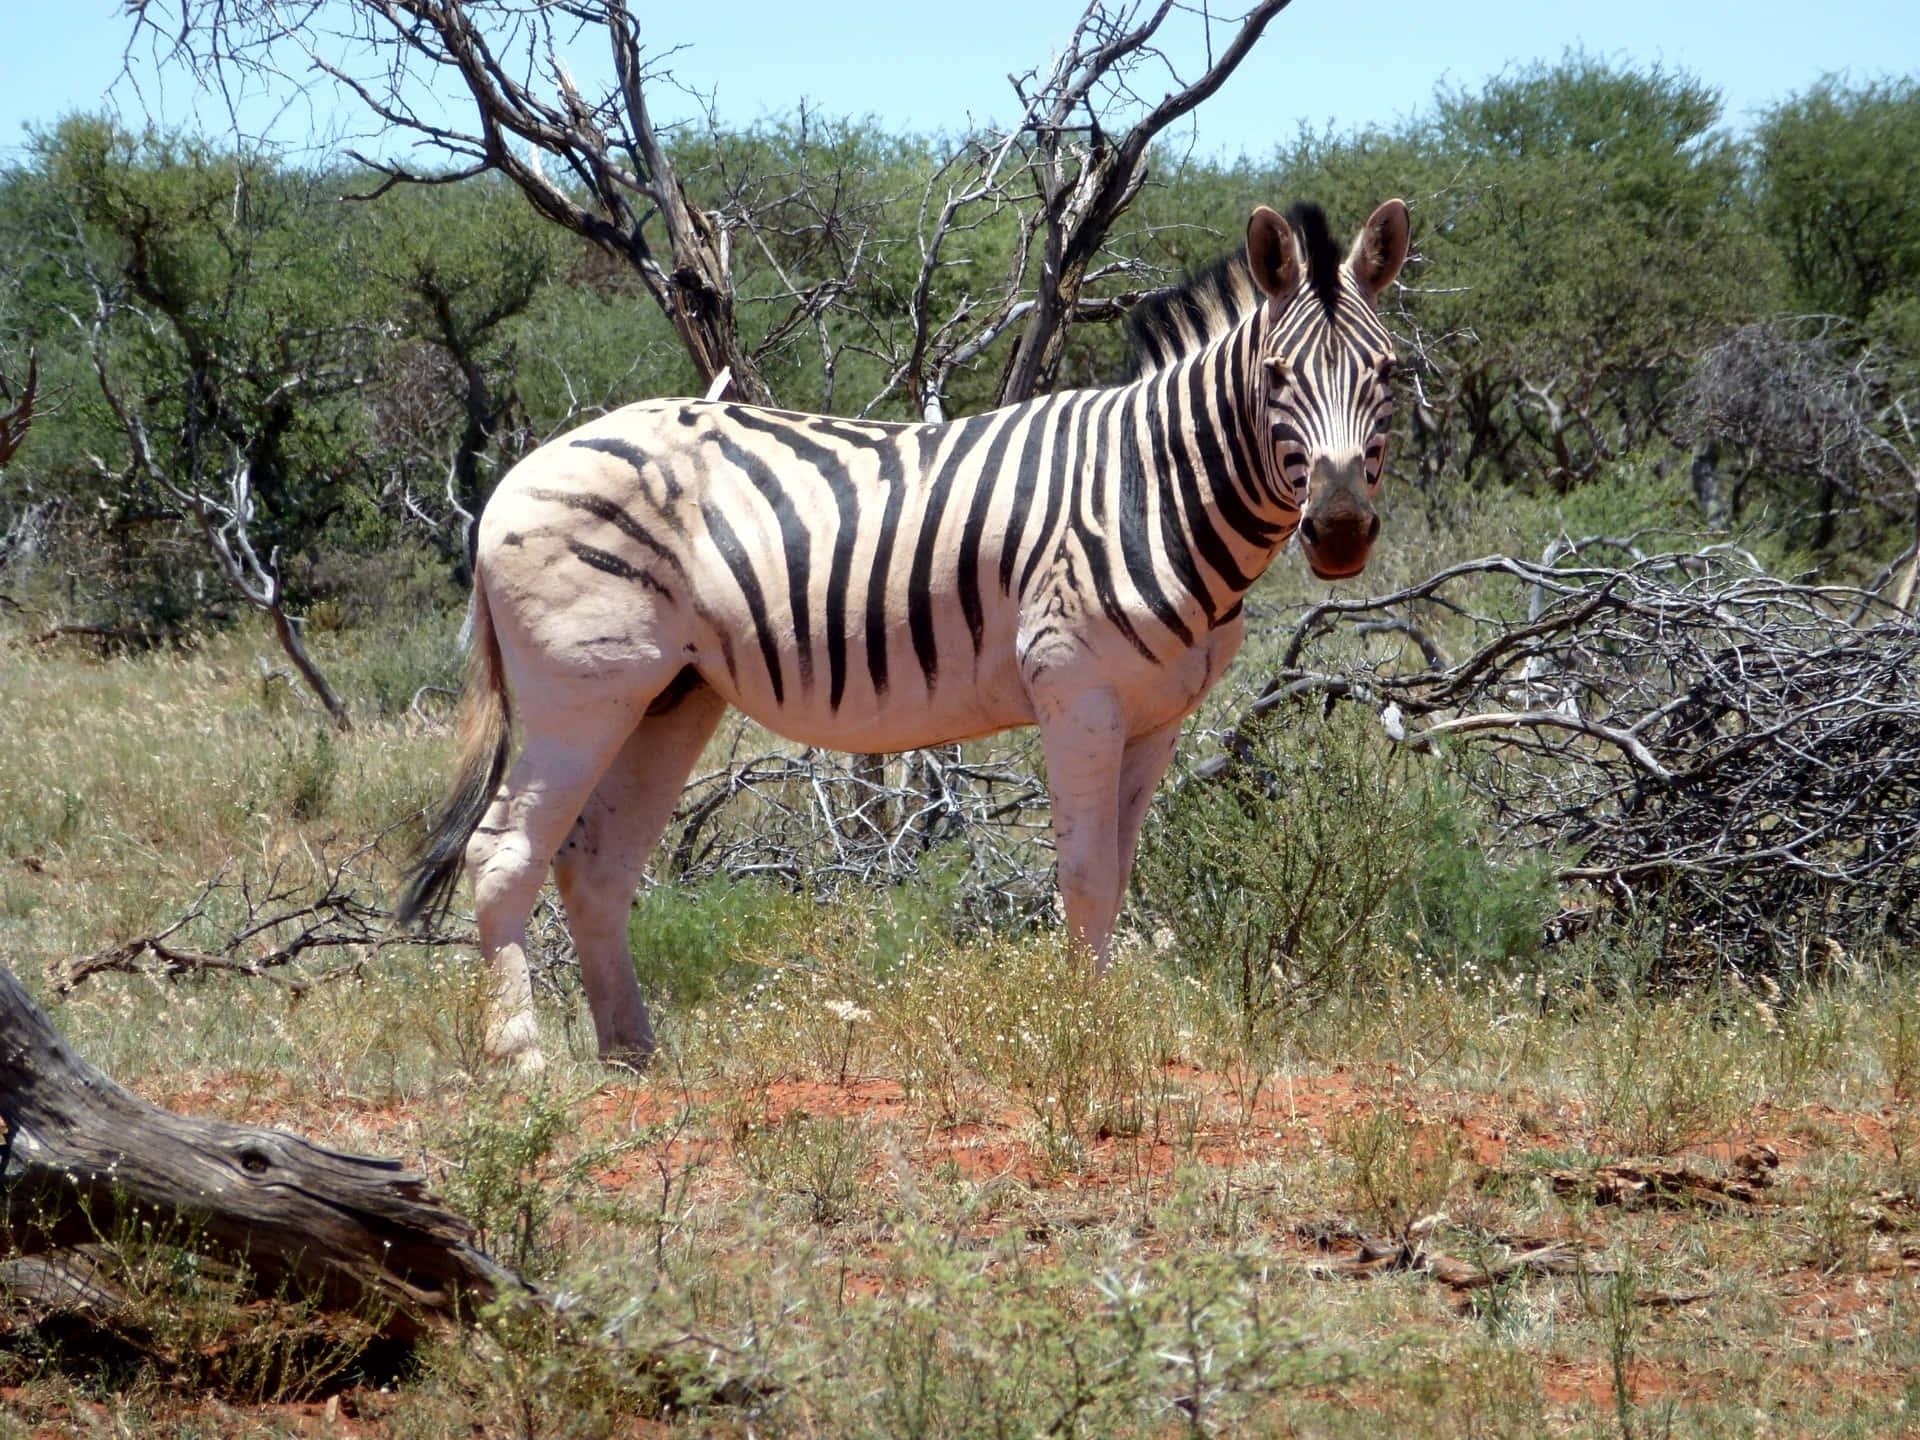 Imagende Un Zebra De Animales Salvajes Parado En El Pasto.